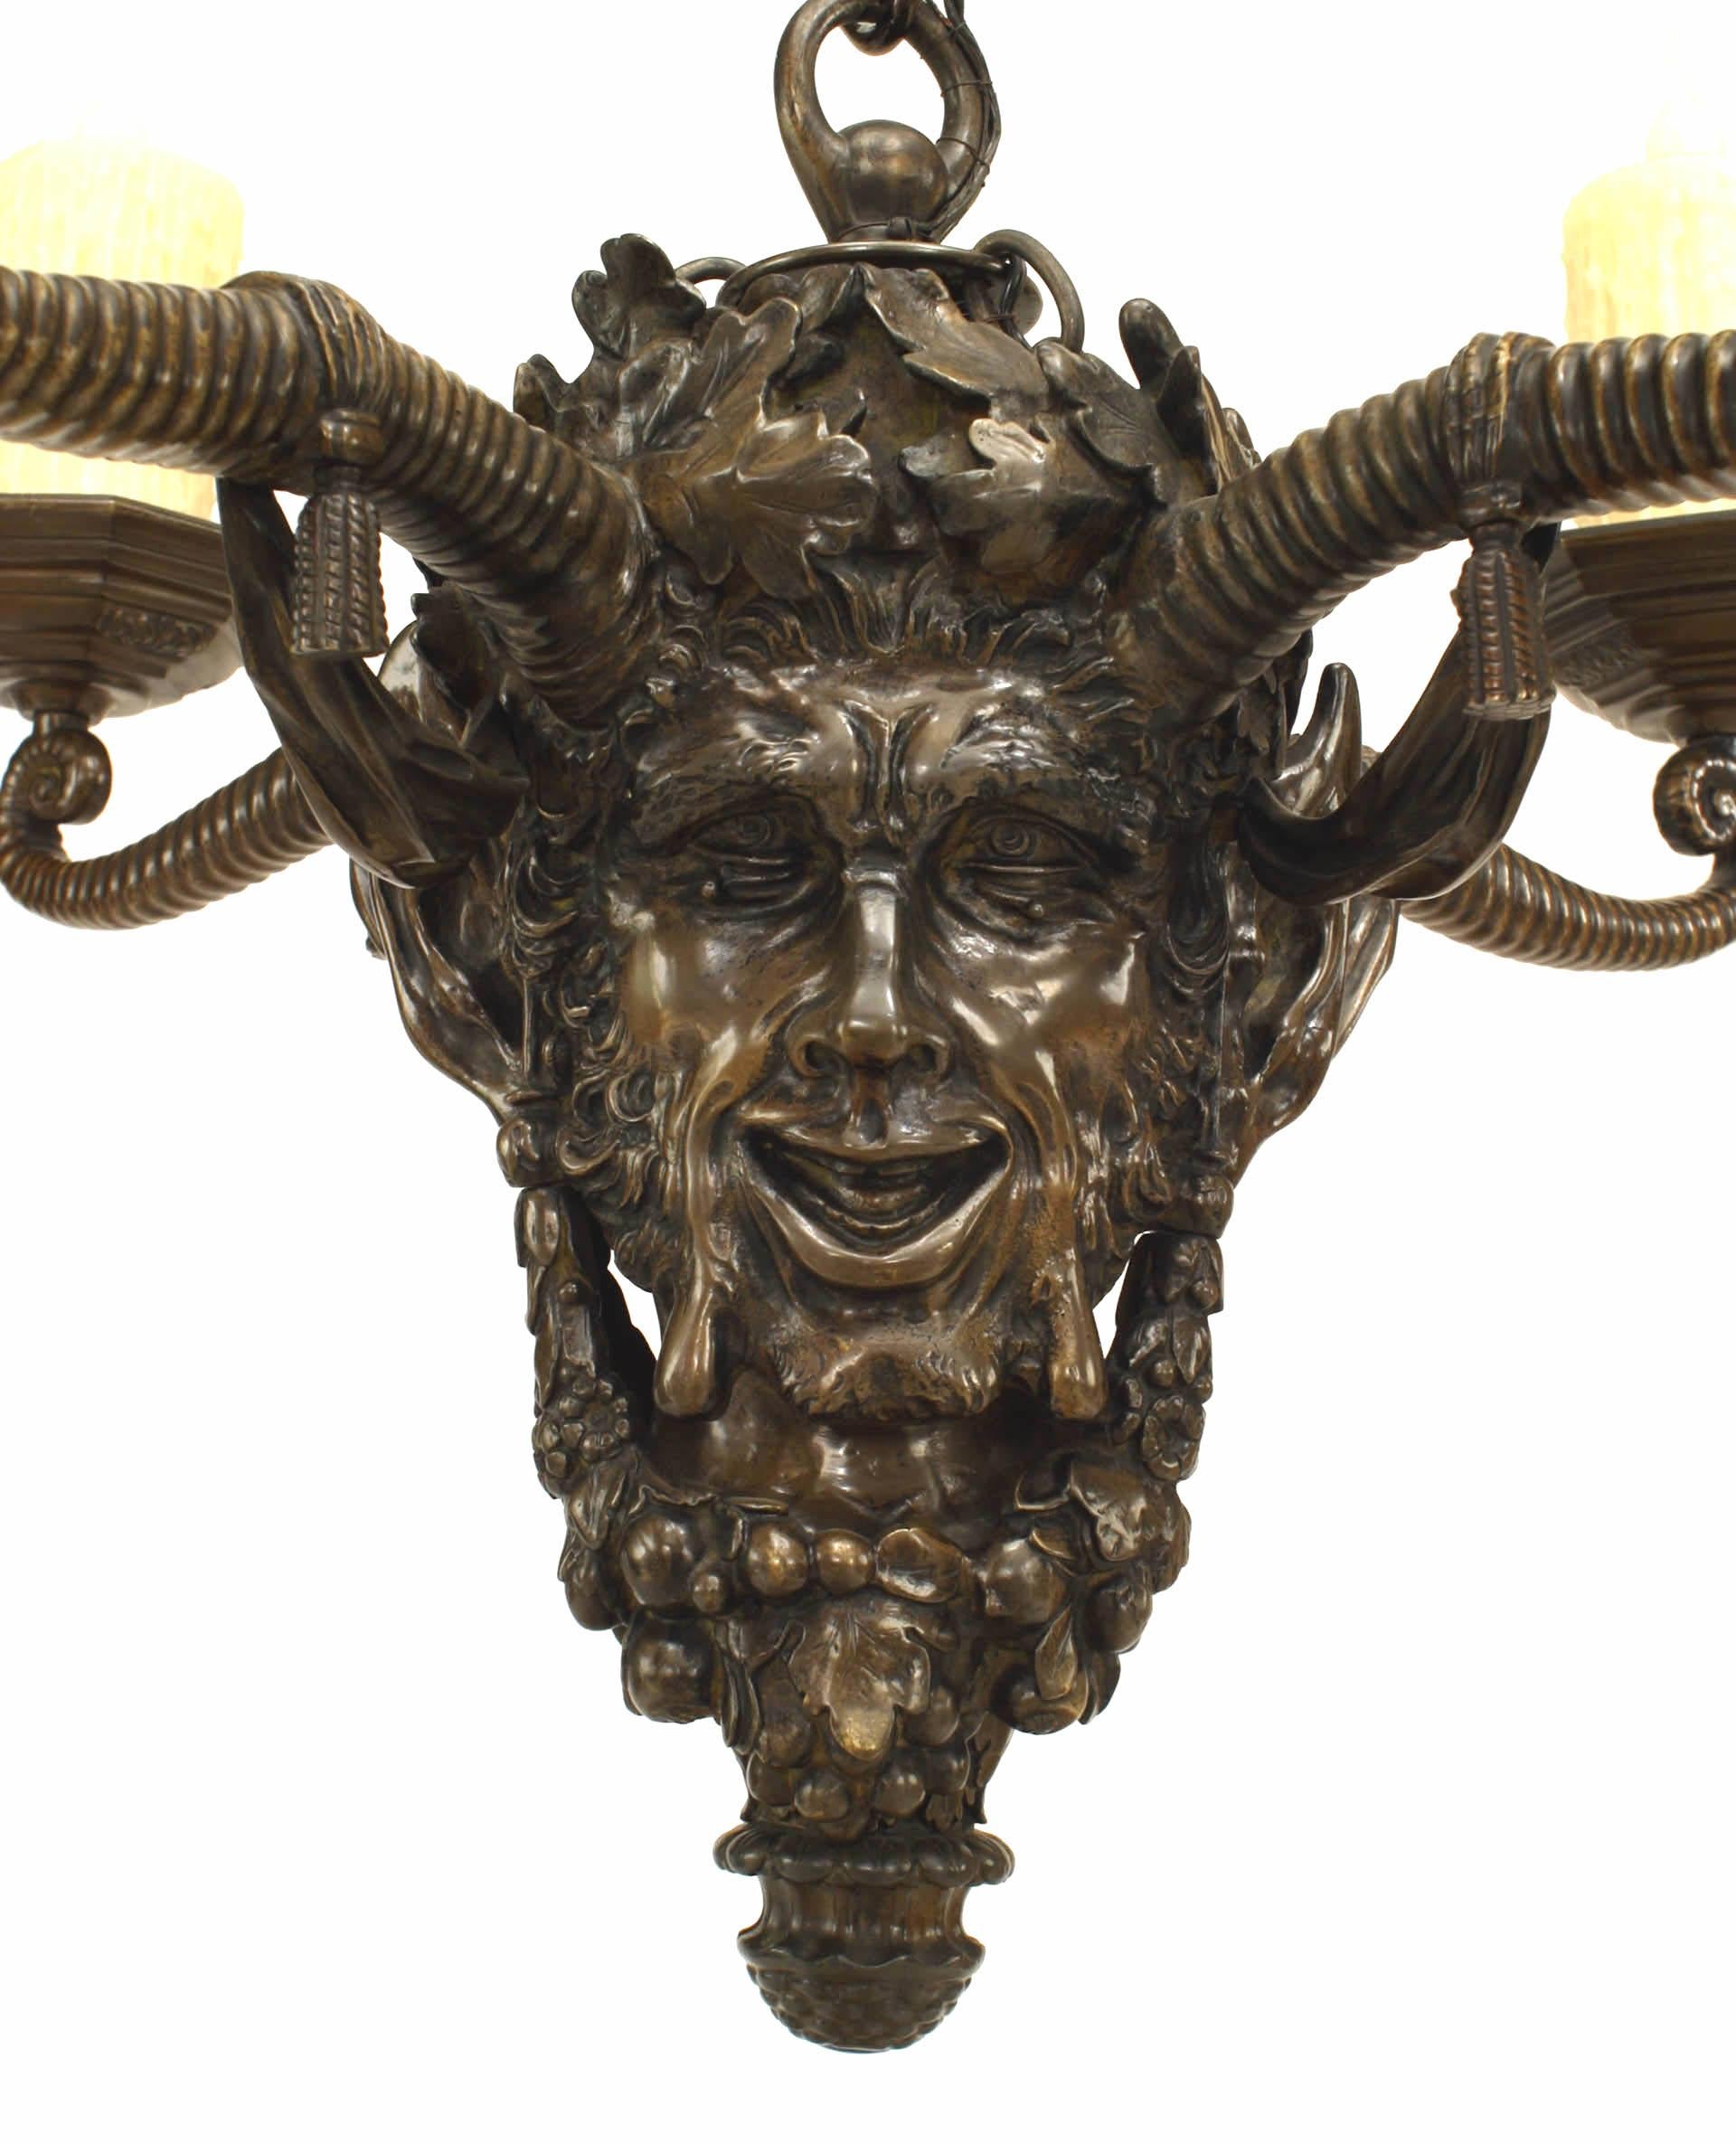 Englischer Kronleuchter aus Bronze im viktorianischen Stil (spätes 19. Jahrhundert) in Form eines mythologischen Kopfes mit Eichenlaubkrone und Girlanden und 4 fantasievollen Hornarmen. (23